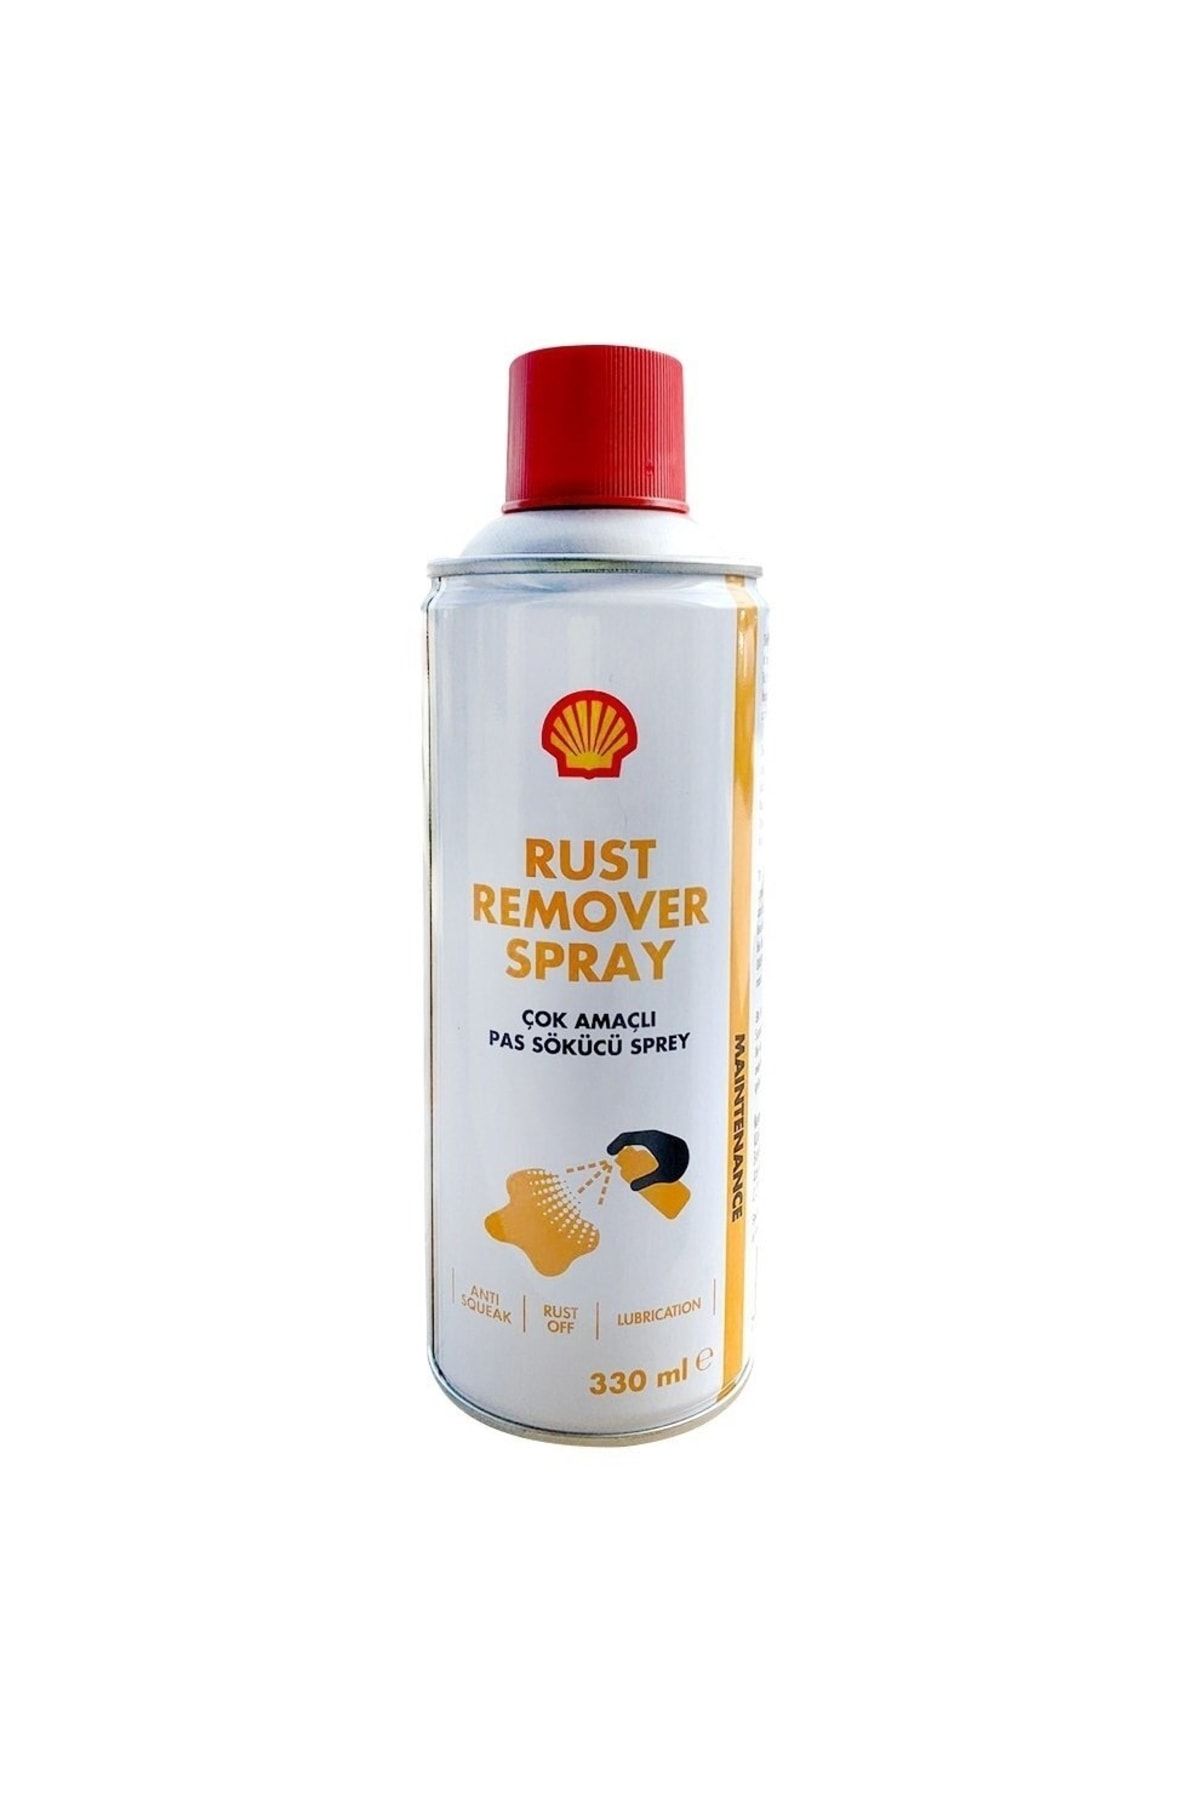 Shell Rust Remover Spray Çok Amaçlı Pas Sökücü Sprey 330ml